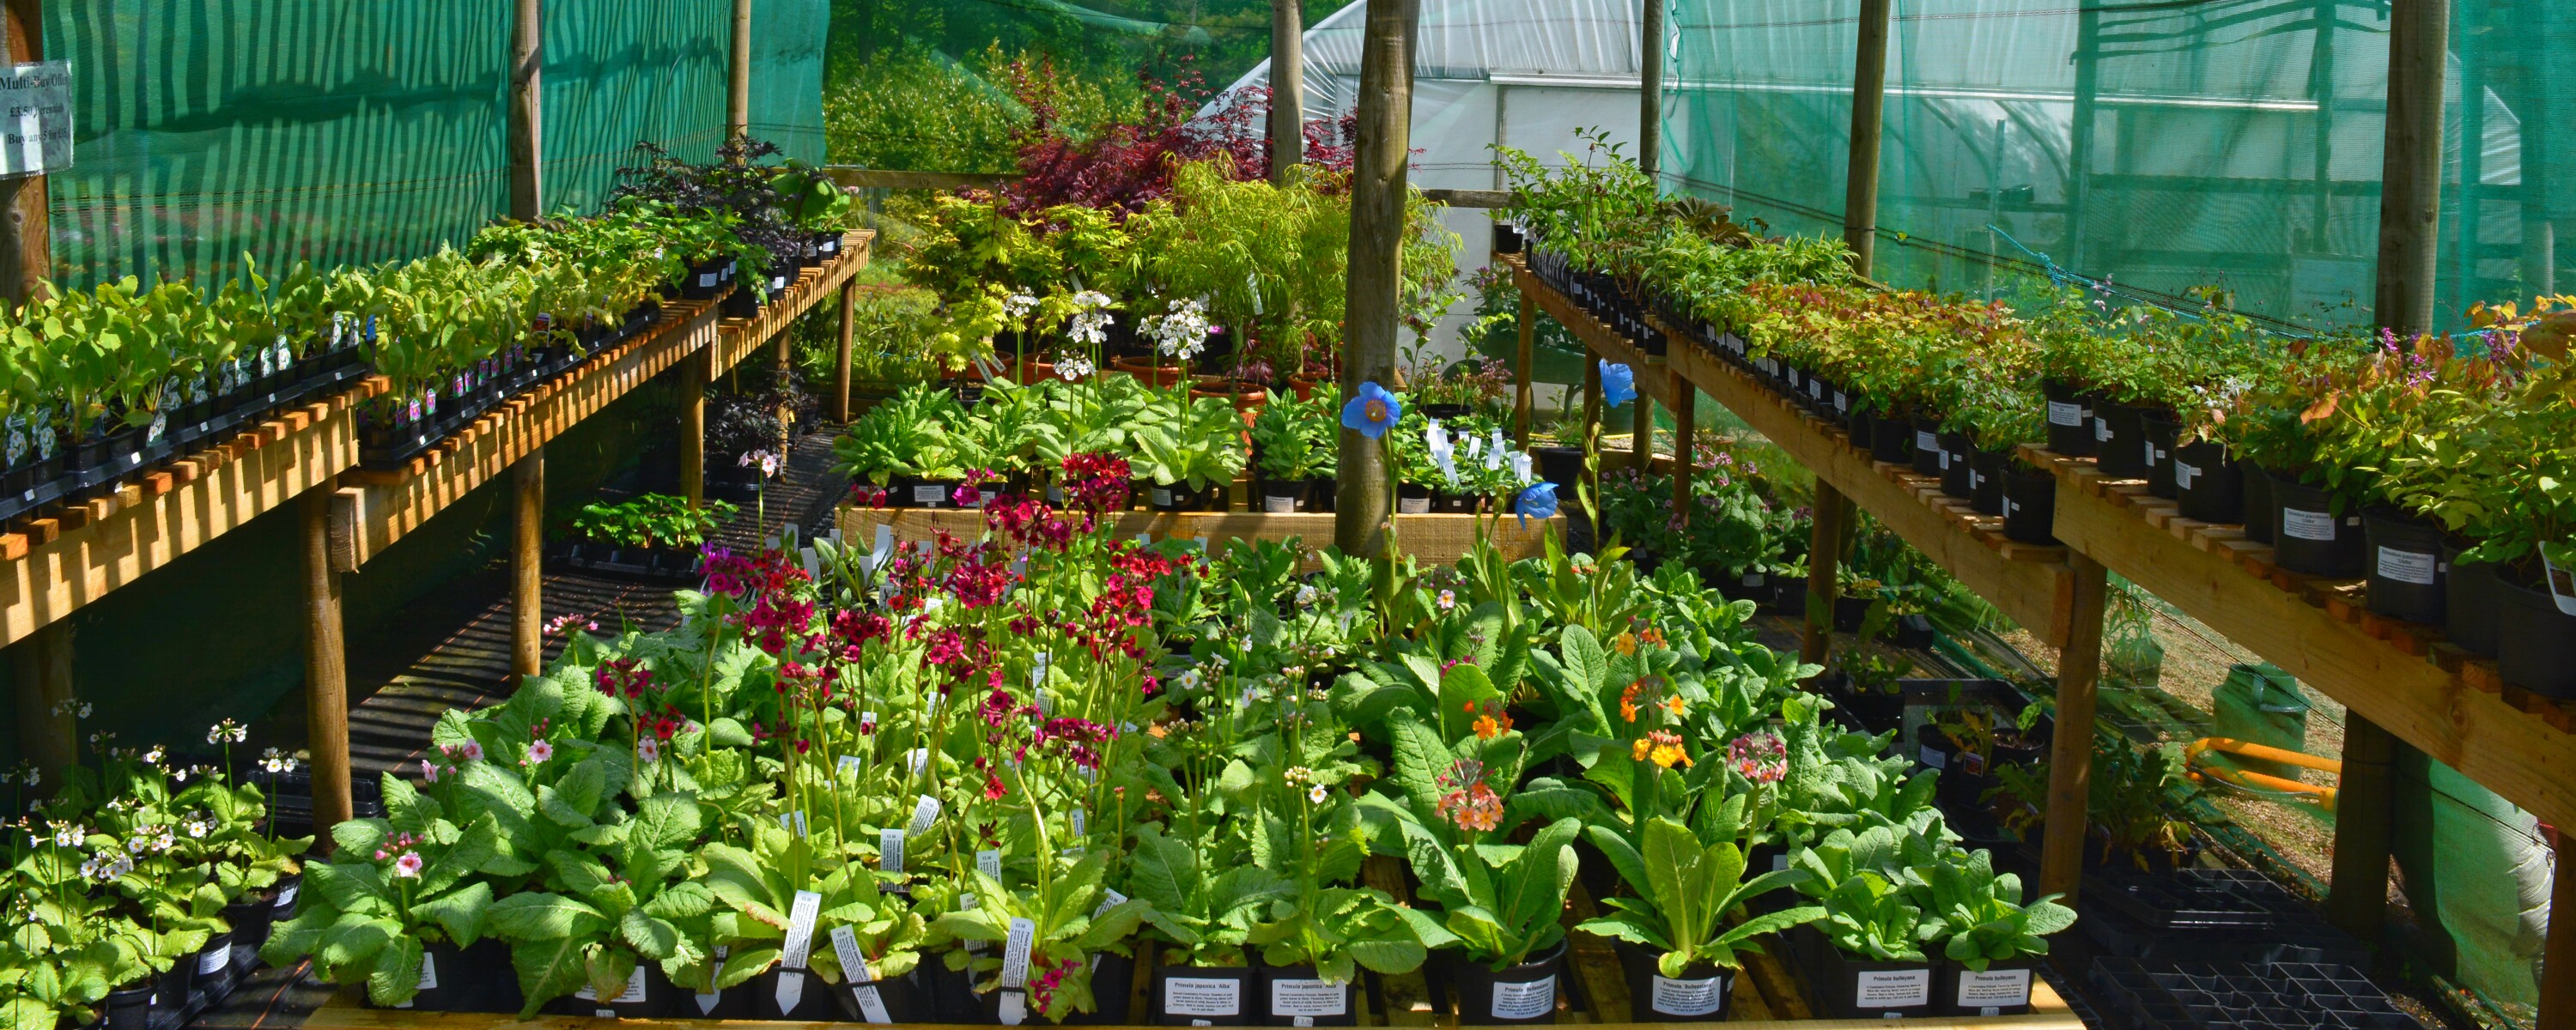 gardens to visit near richmond north yorkshire